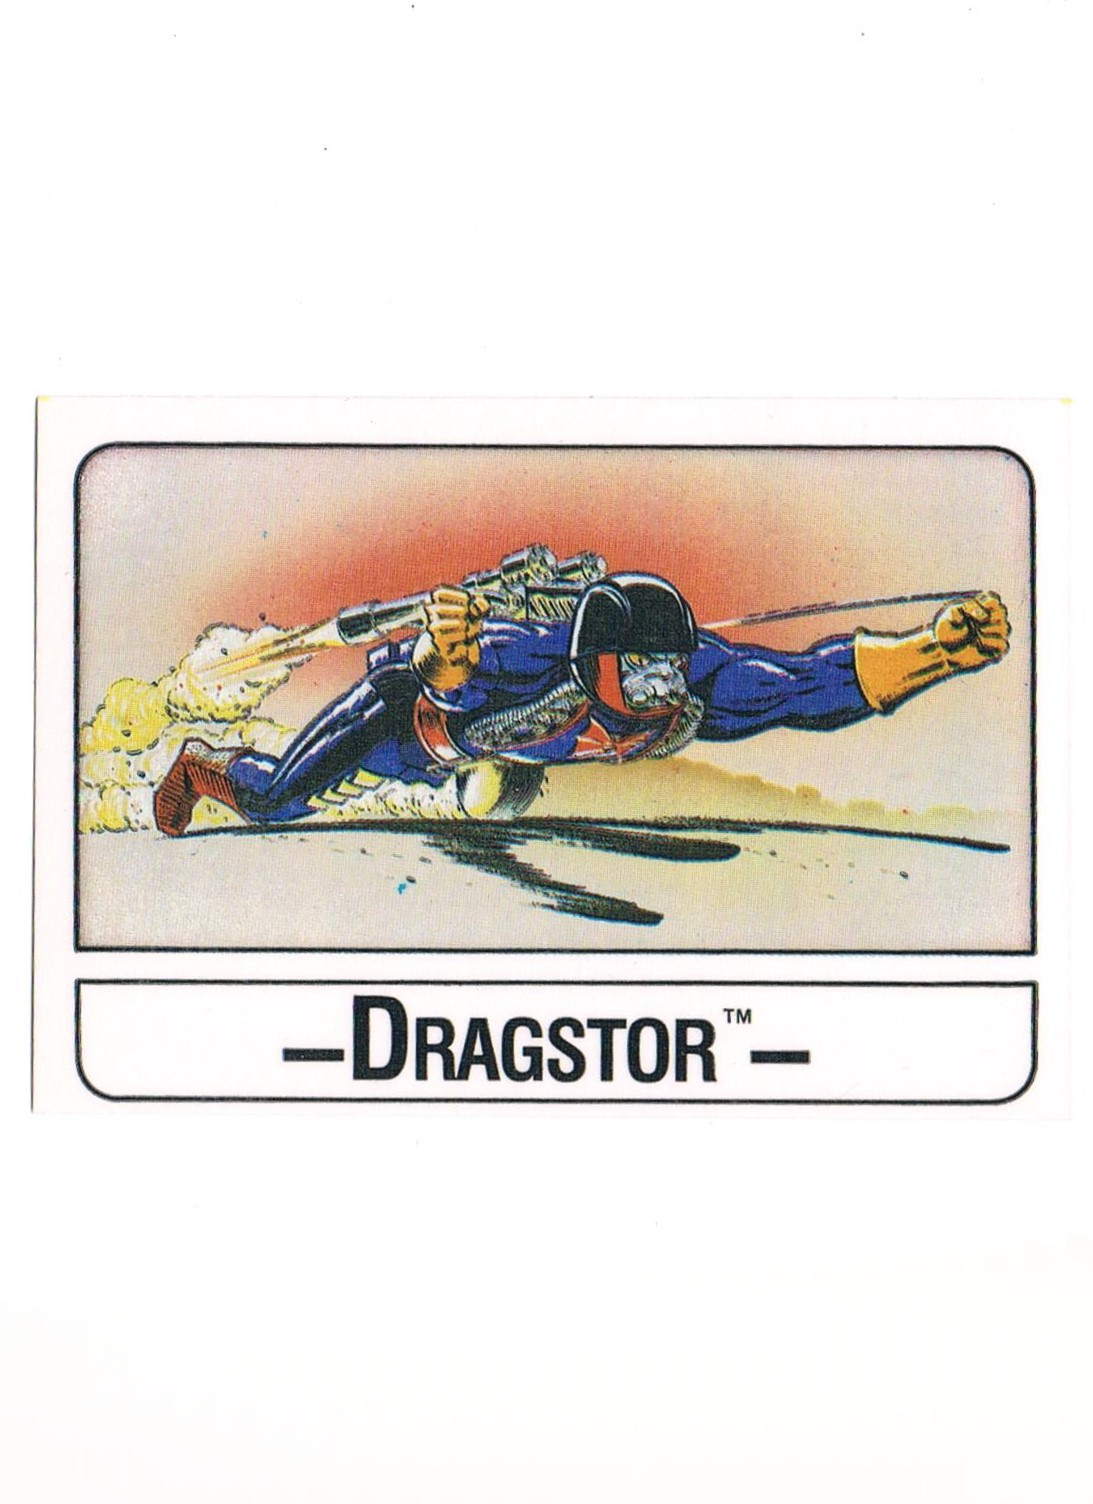 Wonder Trading Card - Dragstor